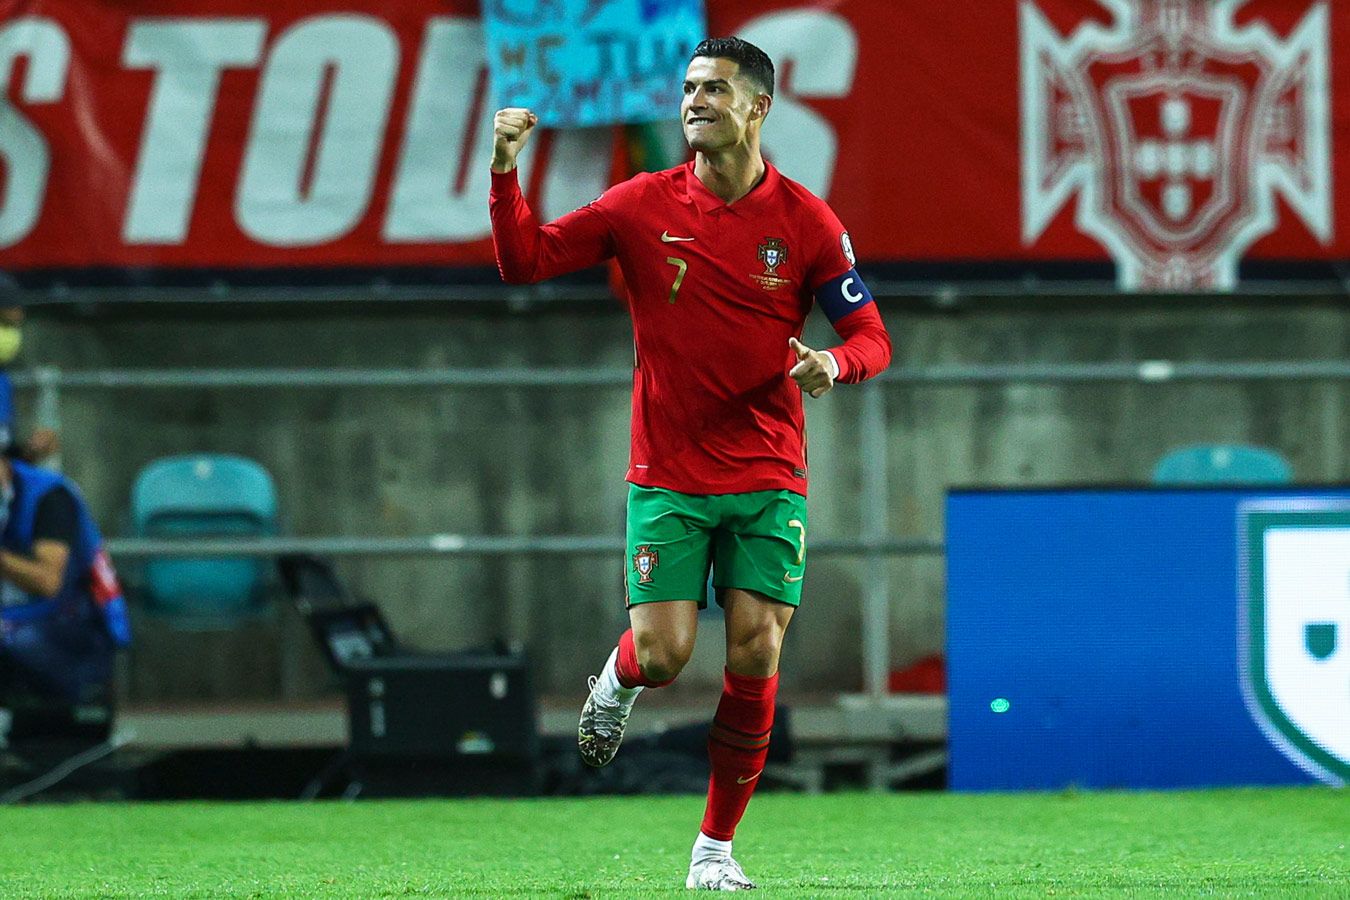 Роналду опубликовал пост после победы сборной Португалии в матче с Чехией в Лиге наций